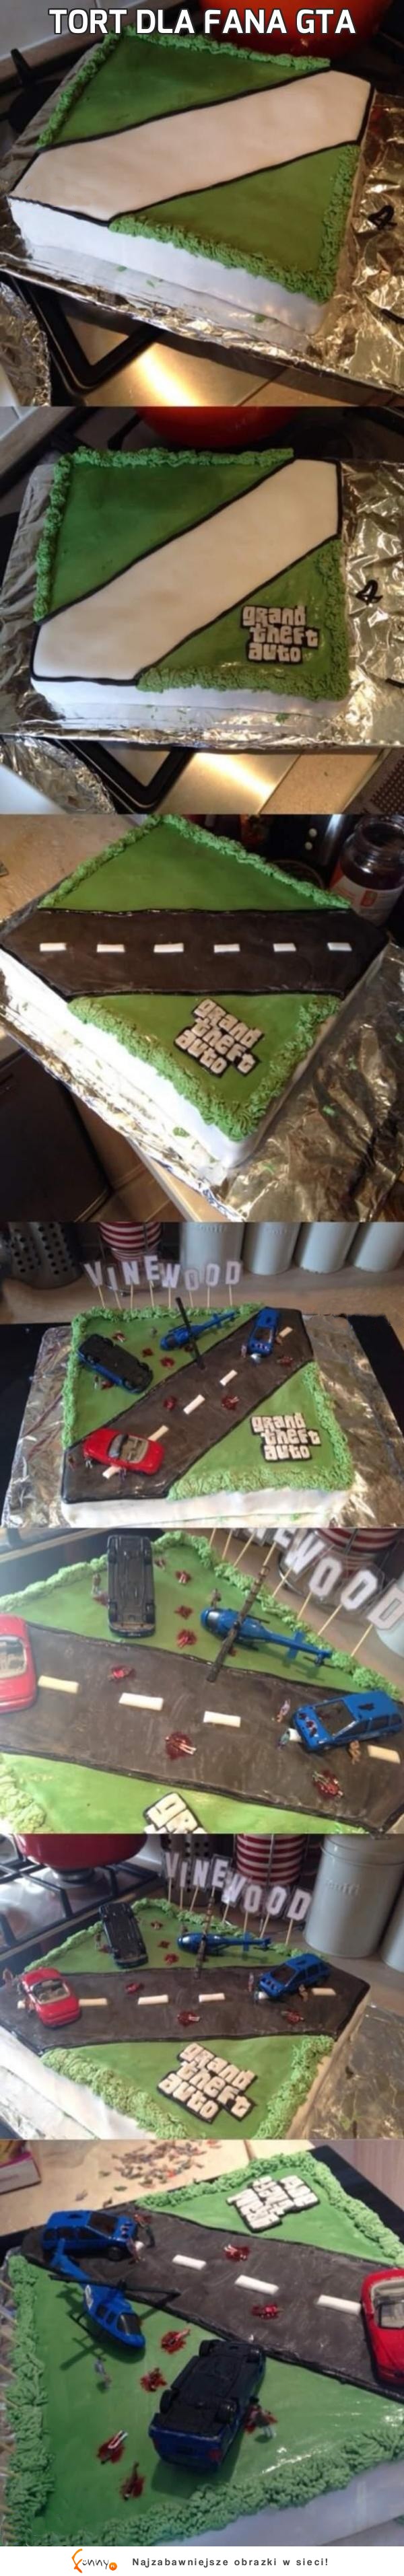 Zobacz jak powstawał tort dla fana GTA, robi wrażenie!